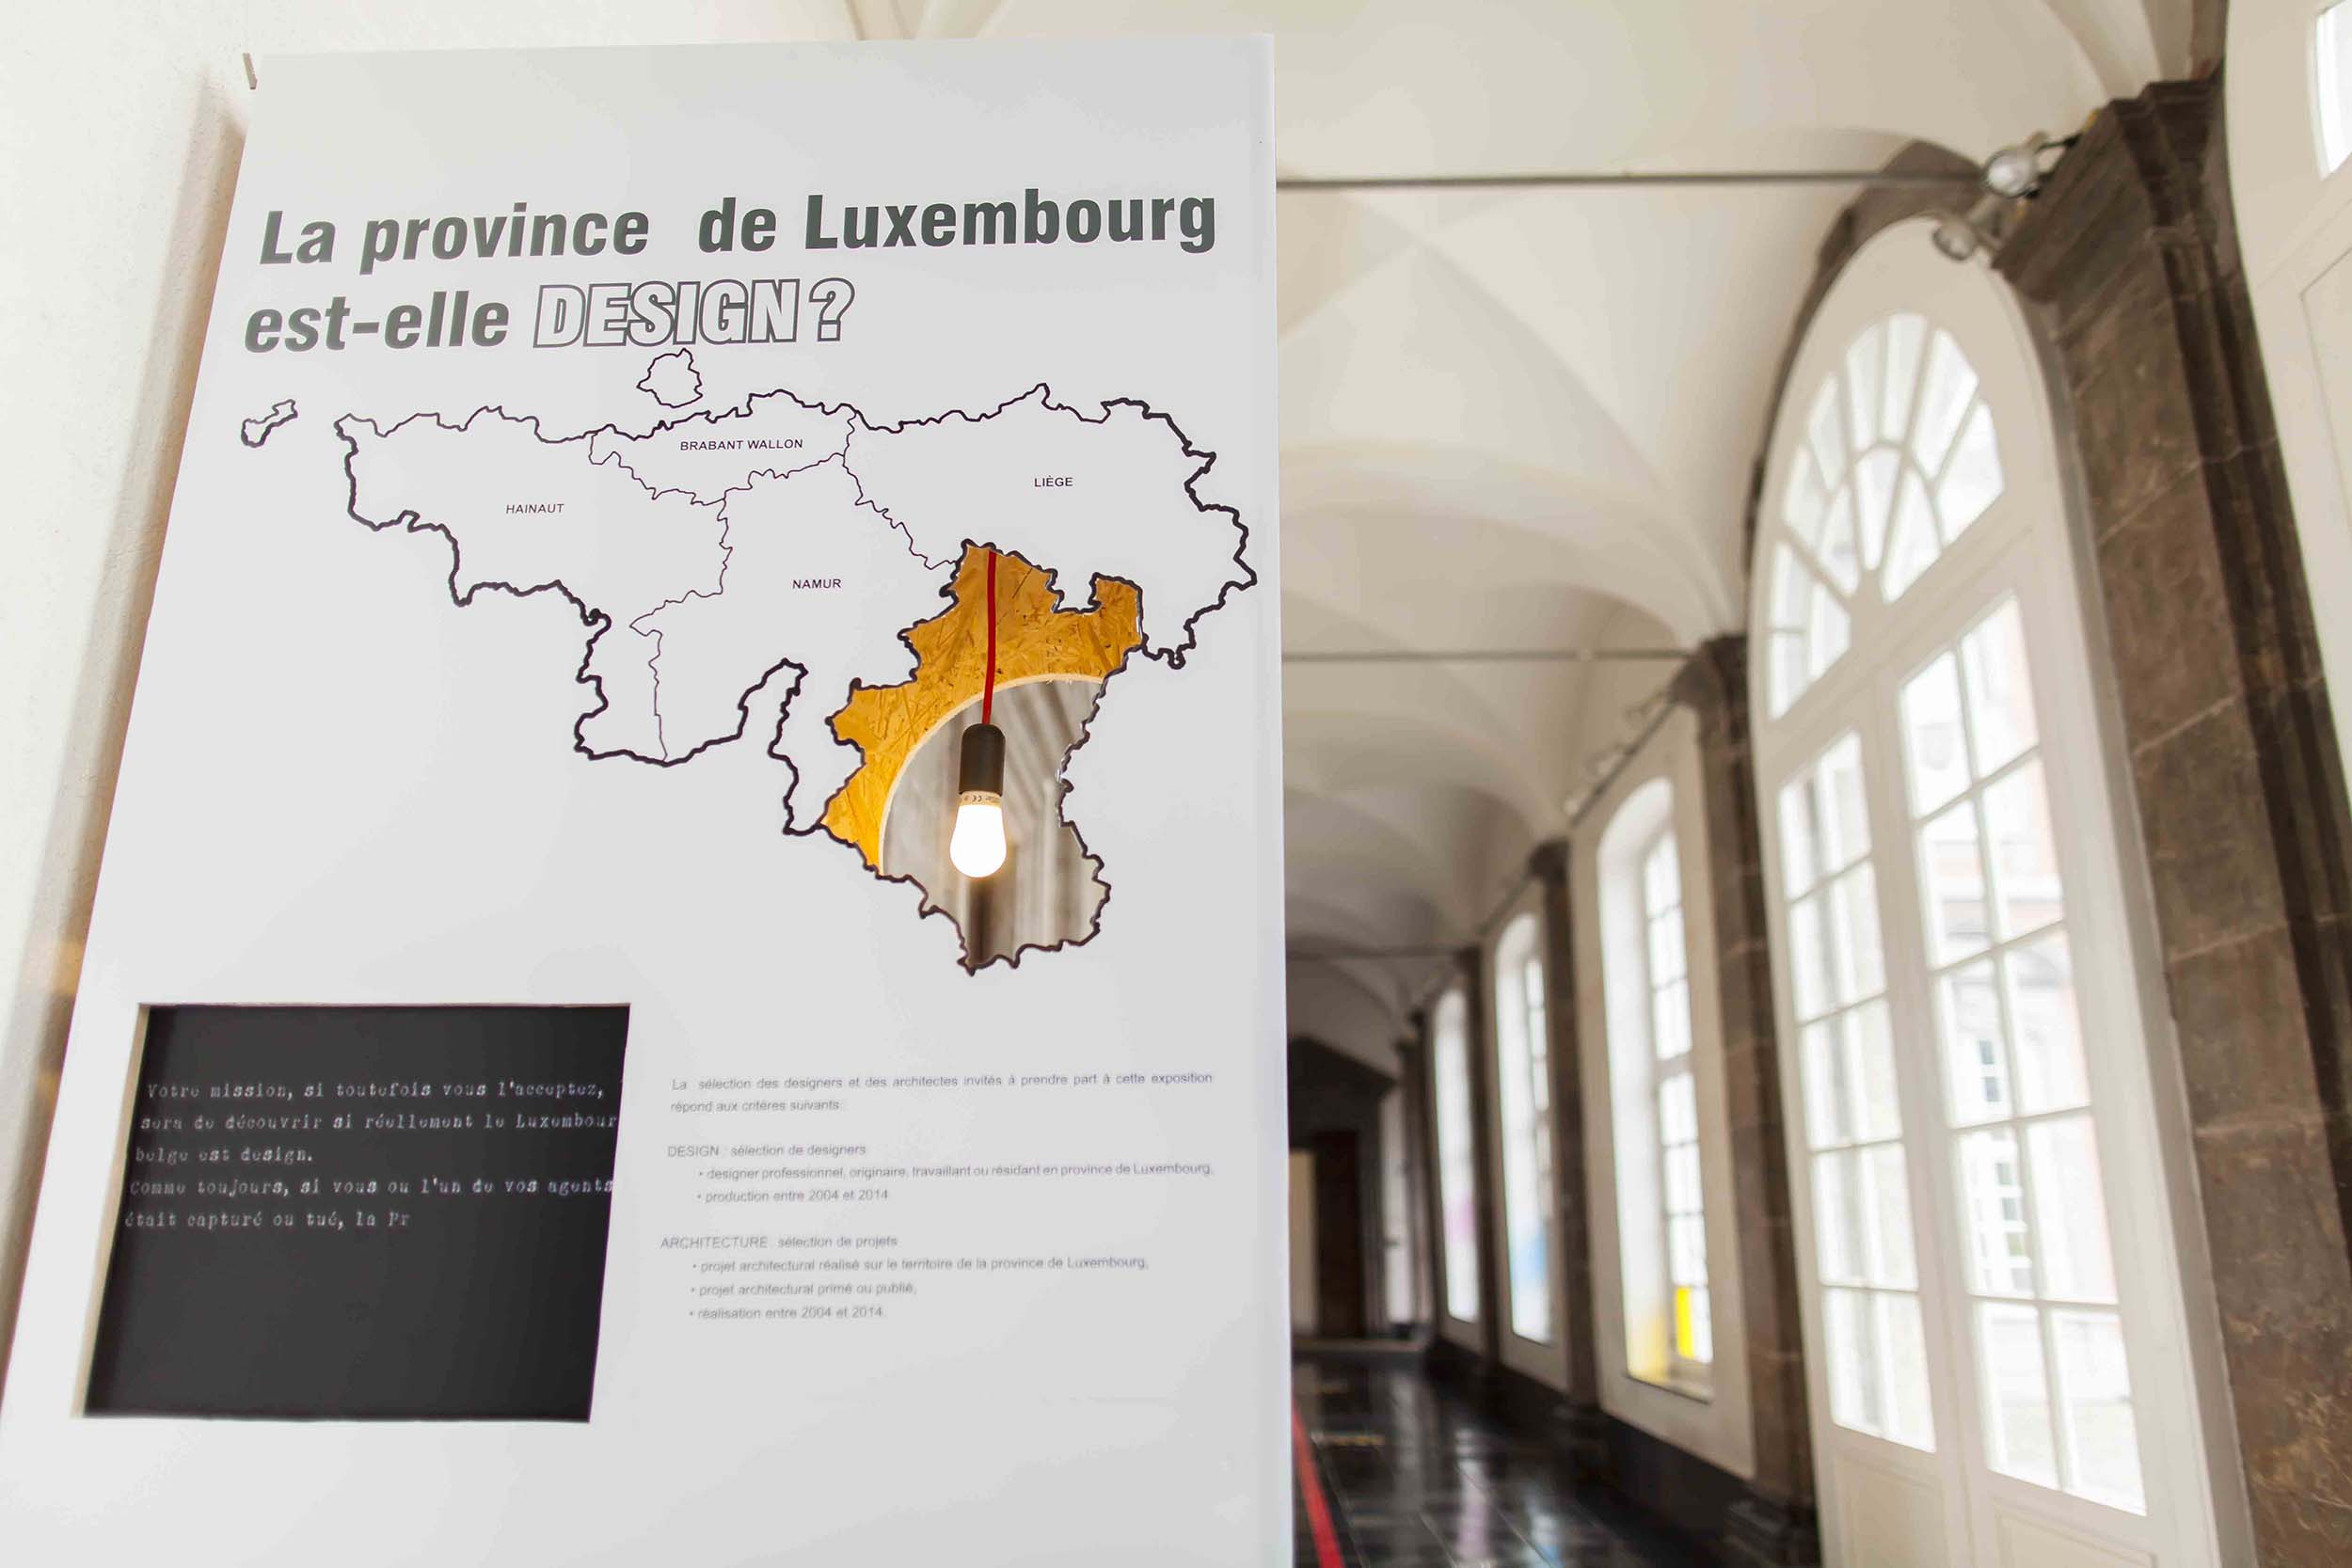 LA PROVINCE DE LUXEMBOURG EST-ELLE DESIGN?